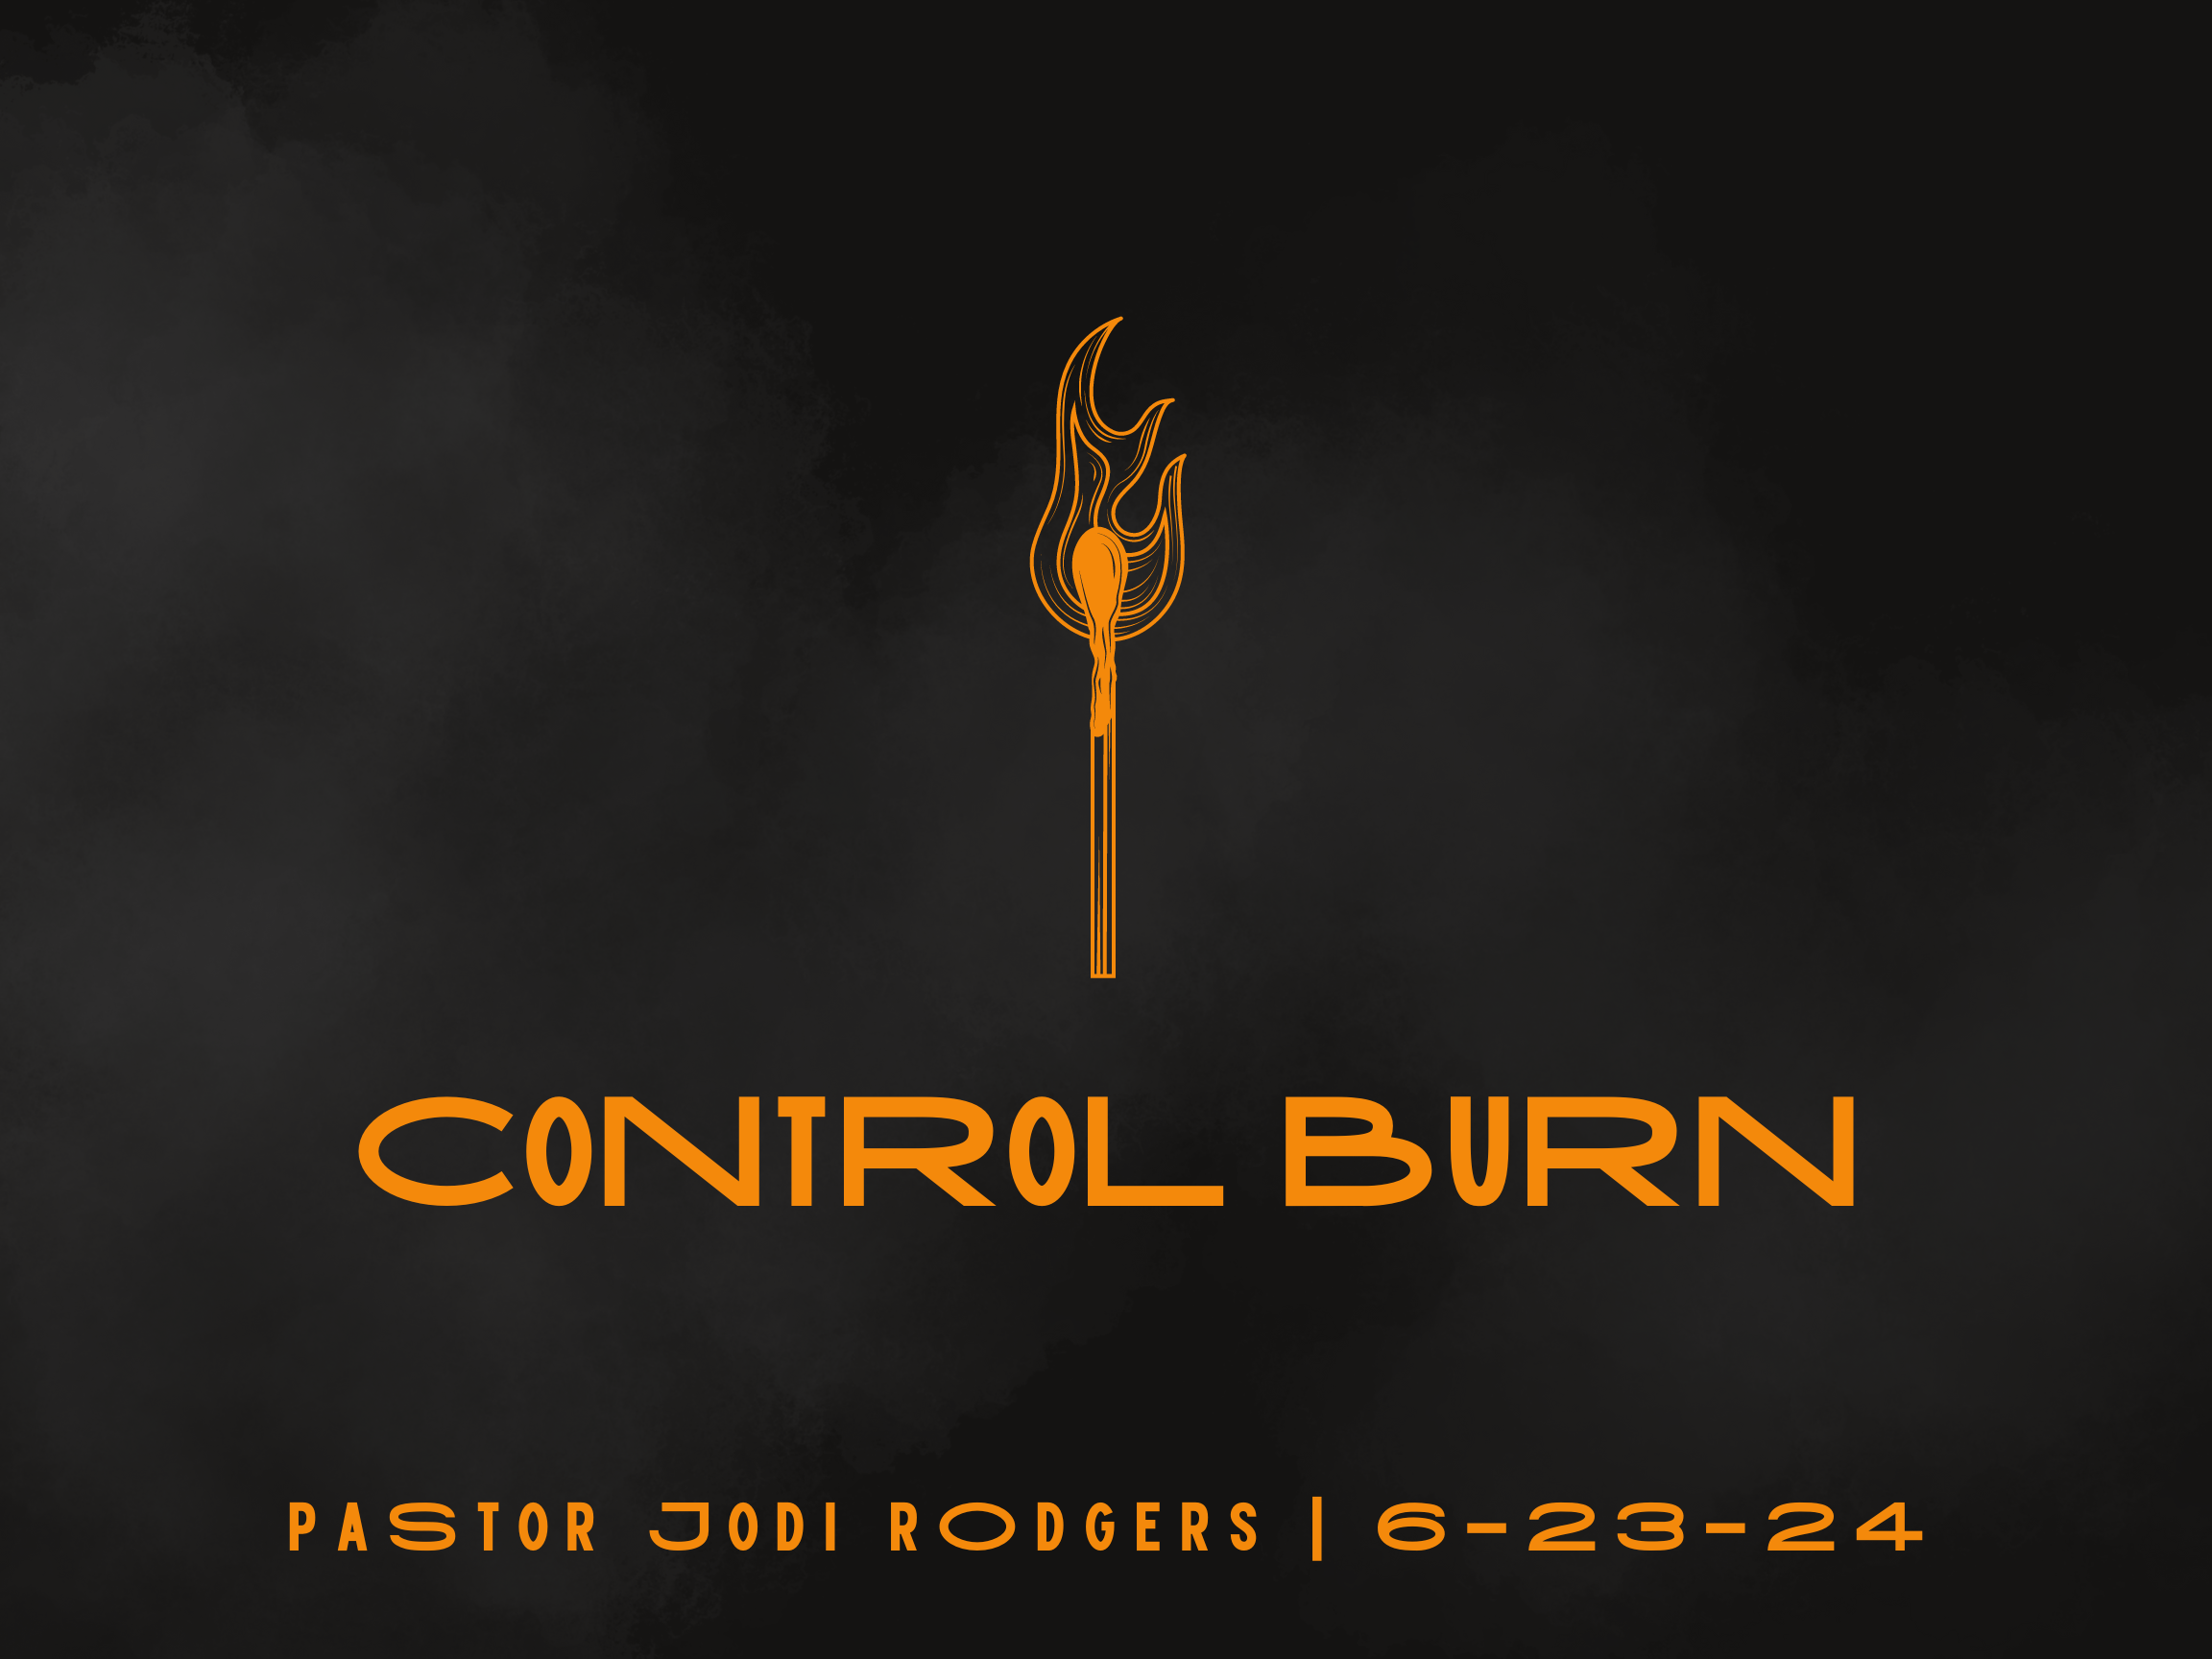 Control Burn